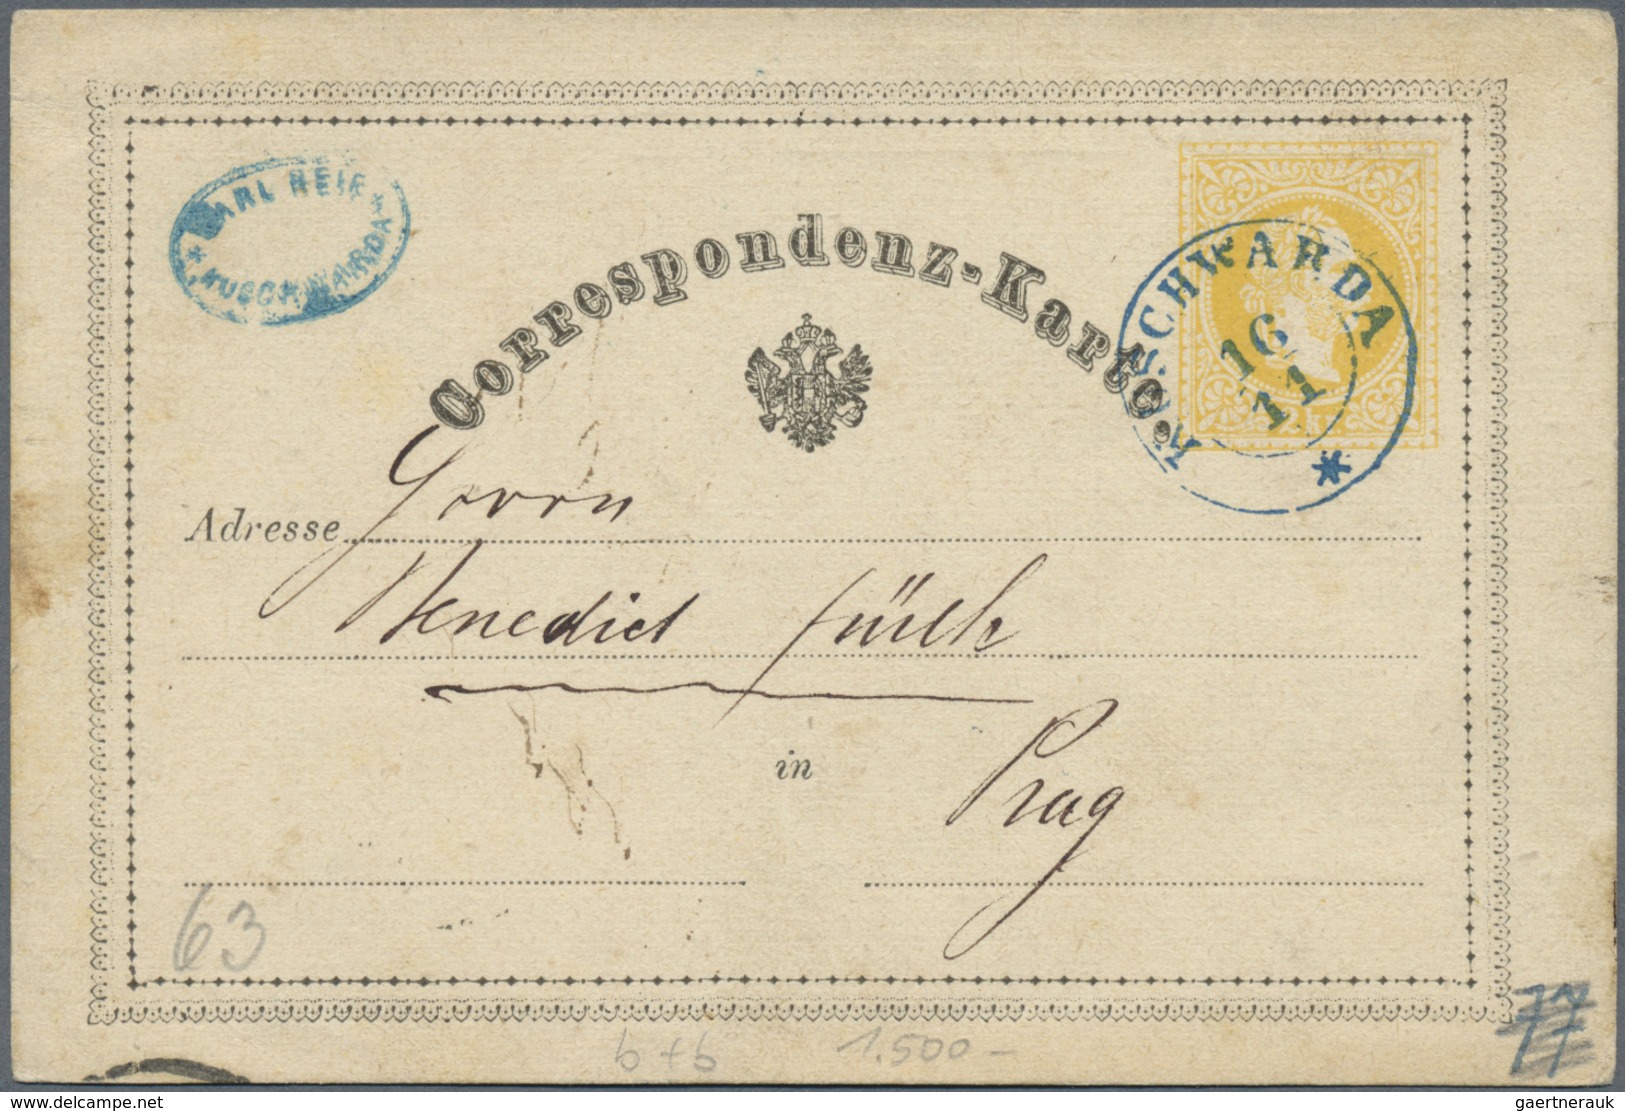 GA/Br Österreich - Stempel: 1869/1886, Stempelsammlung in außergewöhnlicher Qualität. Ca. 150 Belege, meis